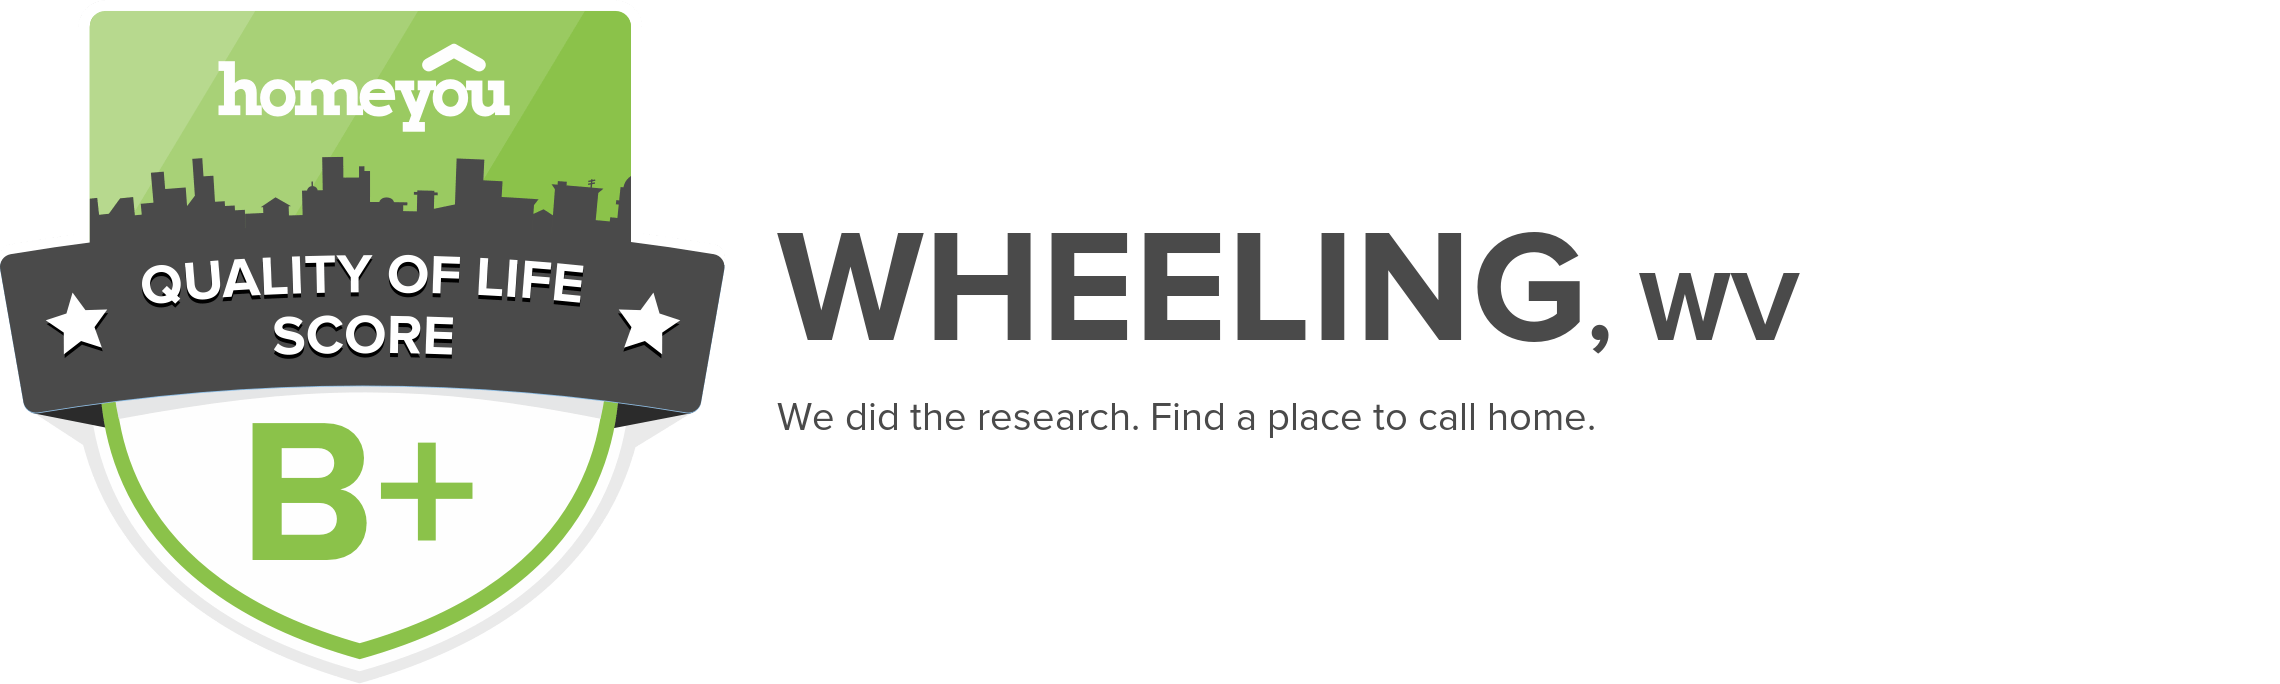 Wheeling, WV